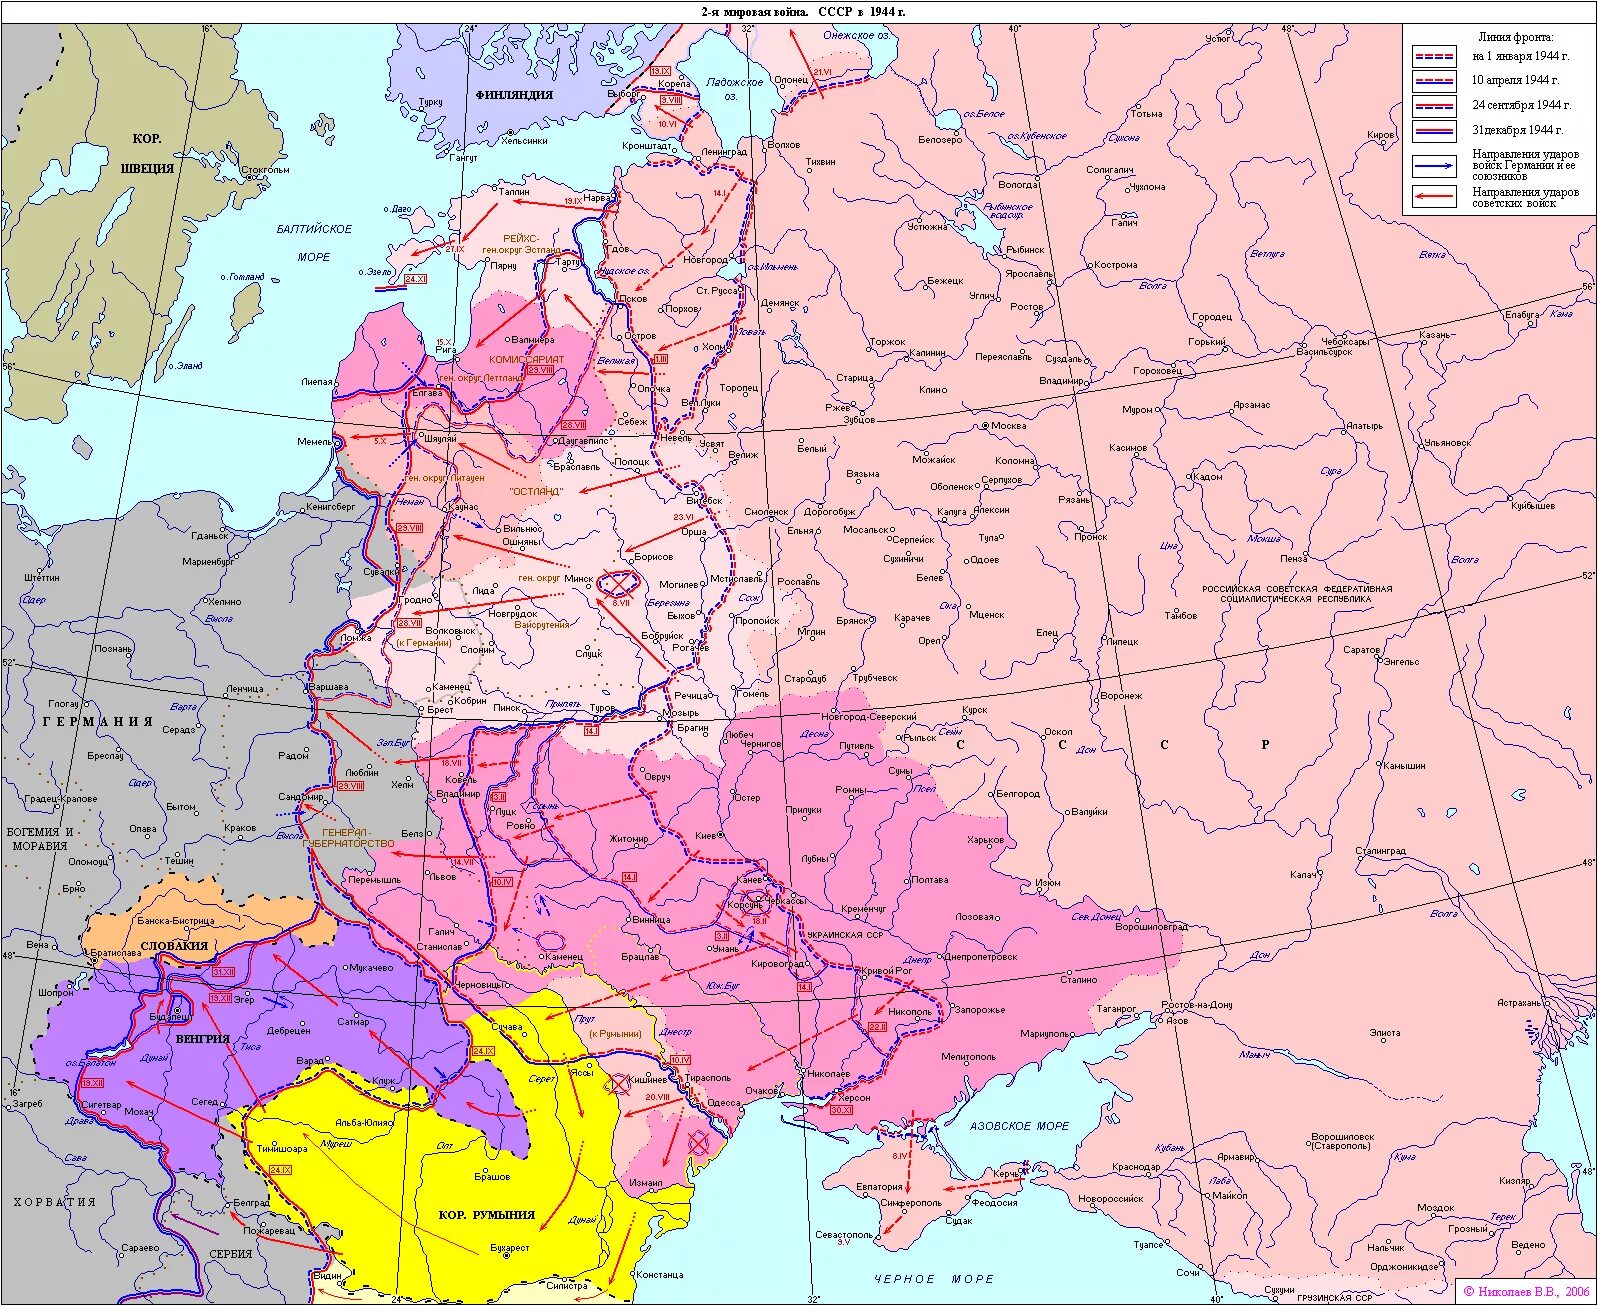 Какие продвижения на фронте. Карта СССР 1941 европейская часть. Карта второй мировой войны 1942 года. Карта Западного фронта второй мировой войны 1941. Карта фронта СССР 1941.